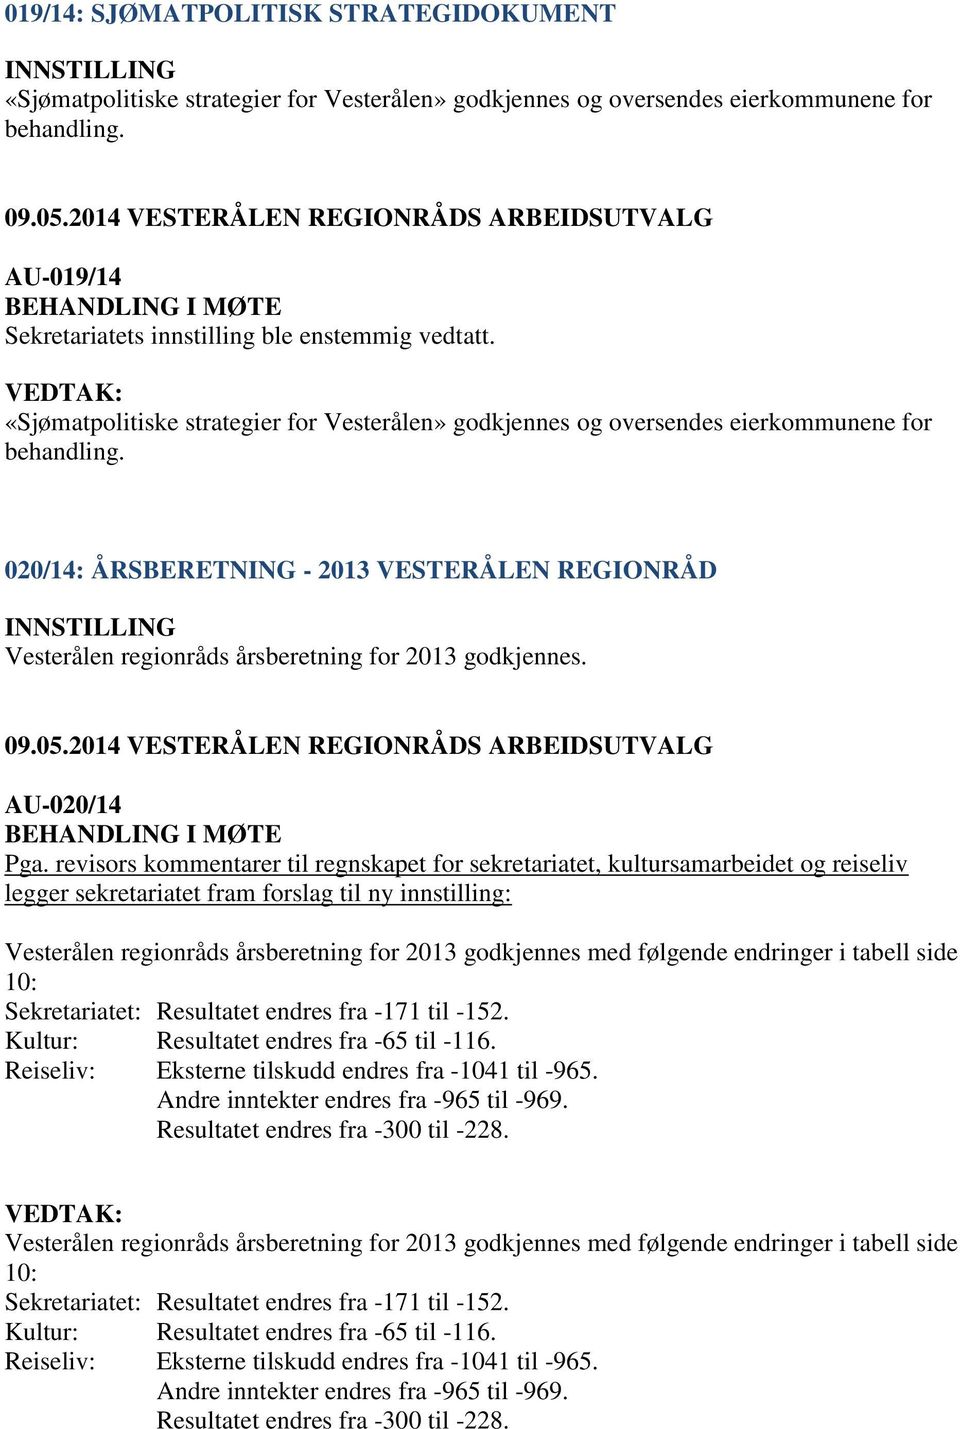 020/14: ÅRSBERETNING - 2013 VESTERÅLEN REGIONRÅD Vesterålen regionråds årsberetning for 2013 godkjennes. AU-020/14 Pga.